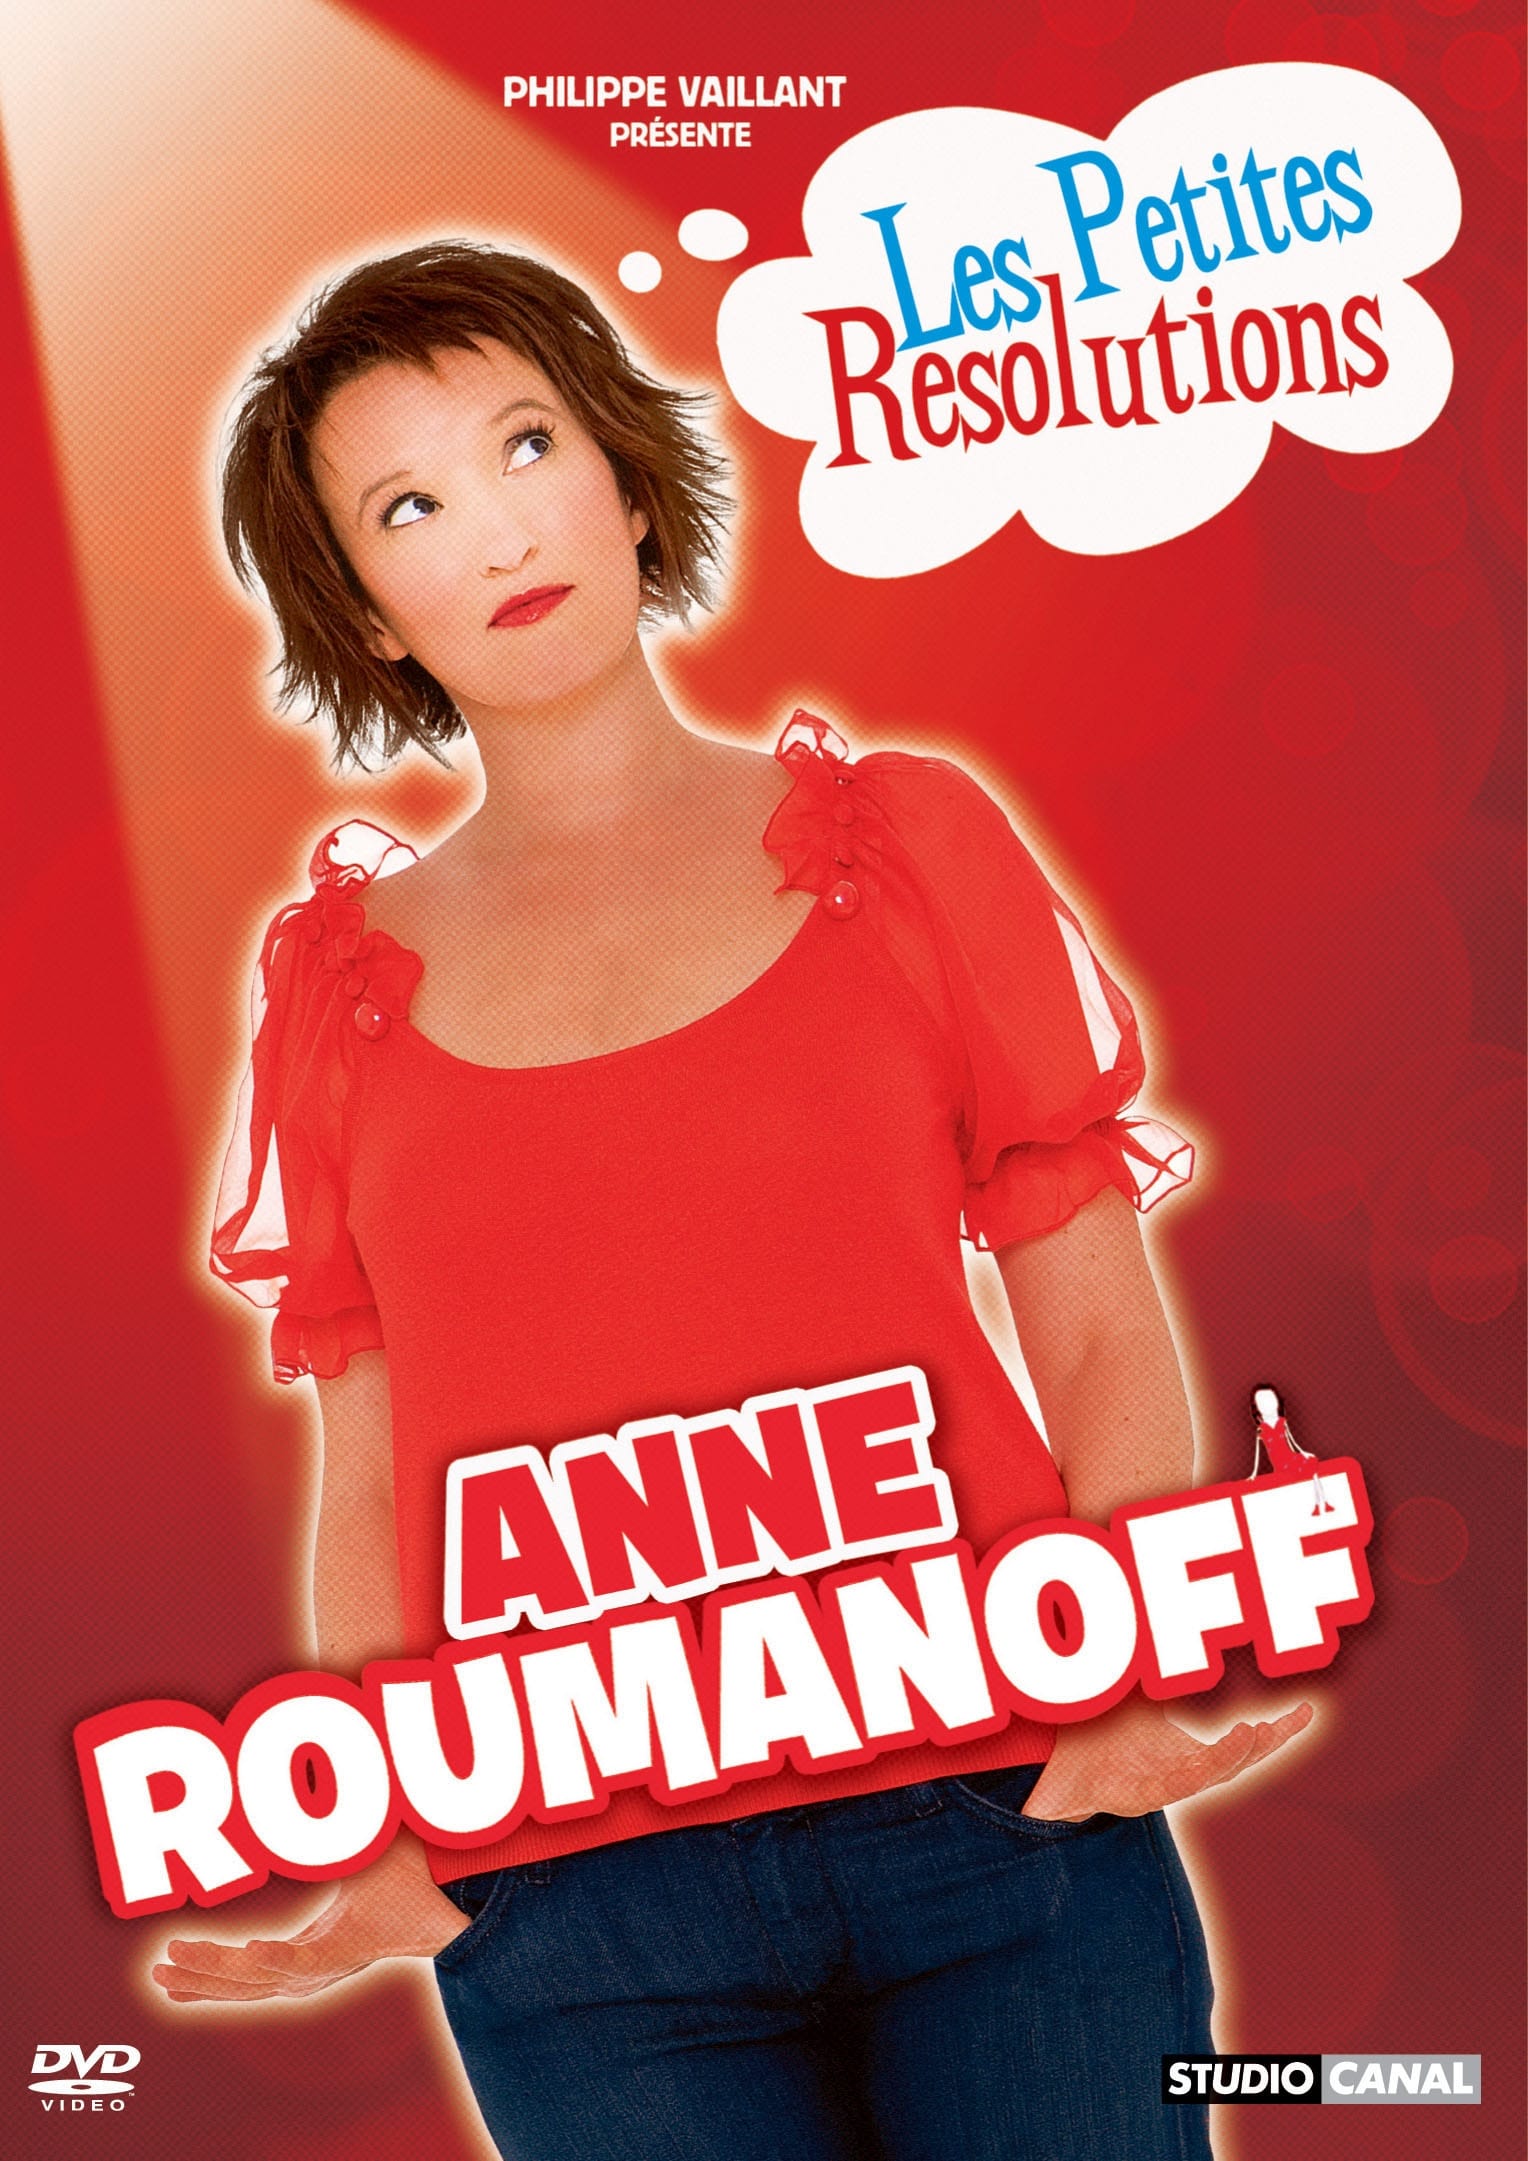 Anne Roumanoff - Les petites résolutions d'Anne Roumanoff